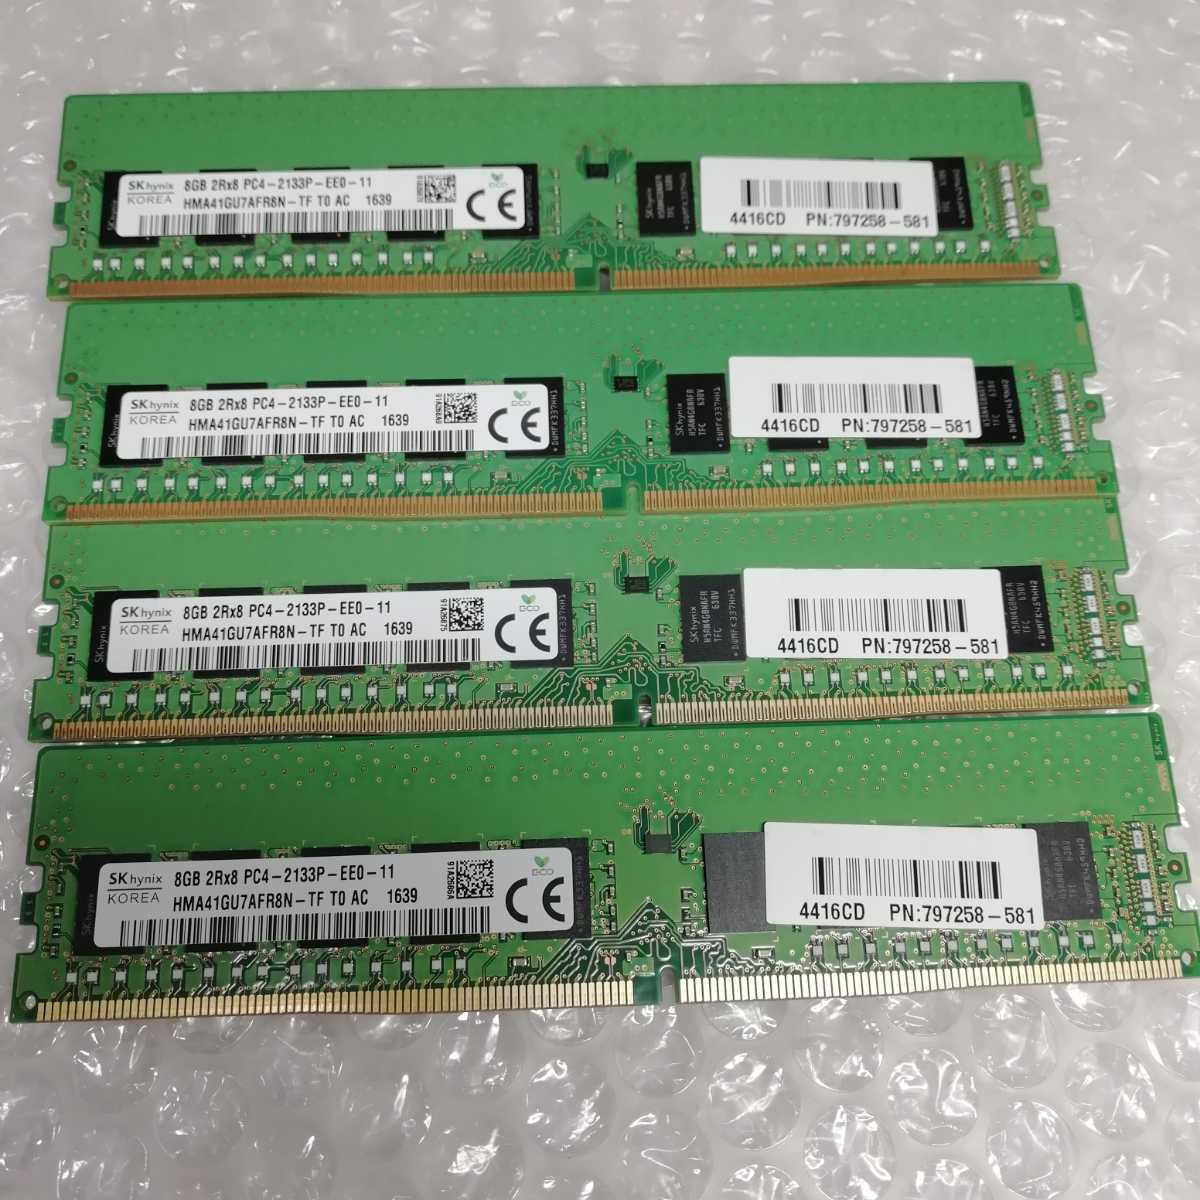 SKhynix　PC4-2133P-EE0-11 (8GB×4枚)合計32GB　サーバ用　BIOS起動確認済　ジャンク扱_画像1